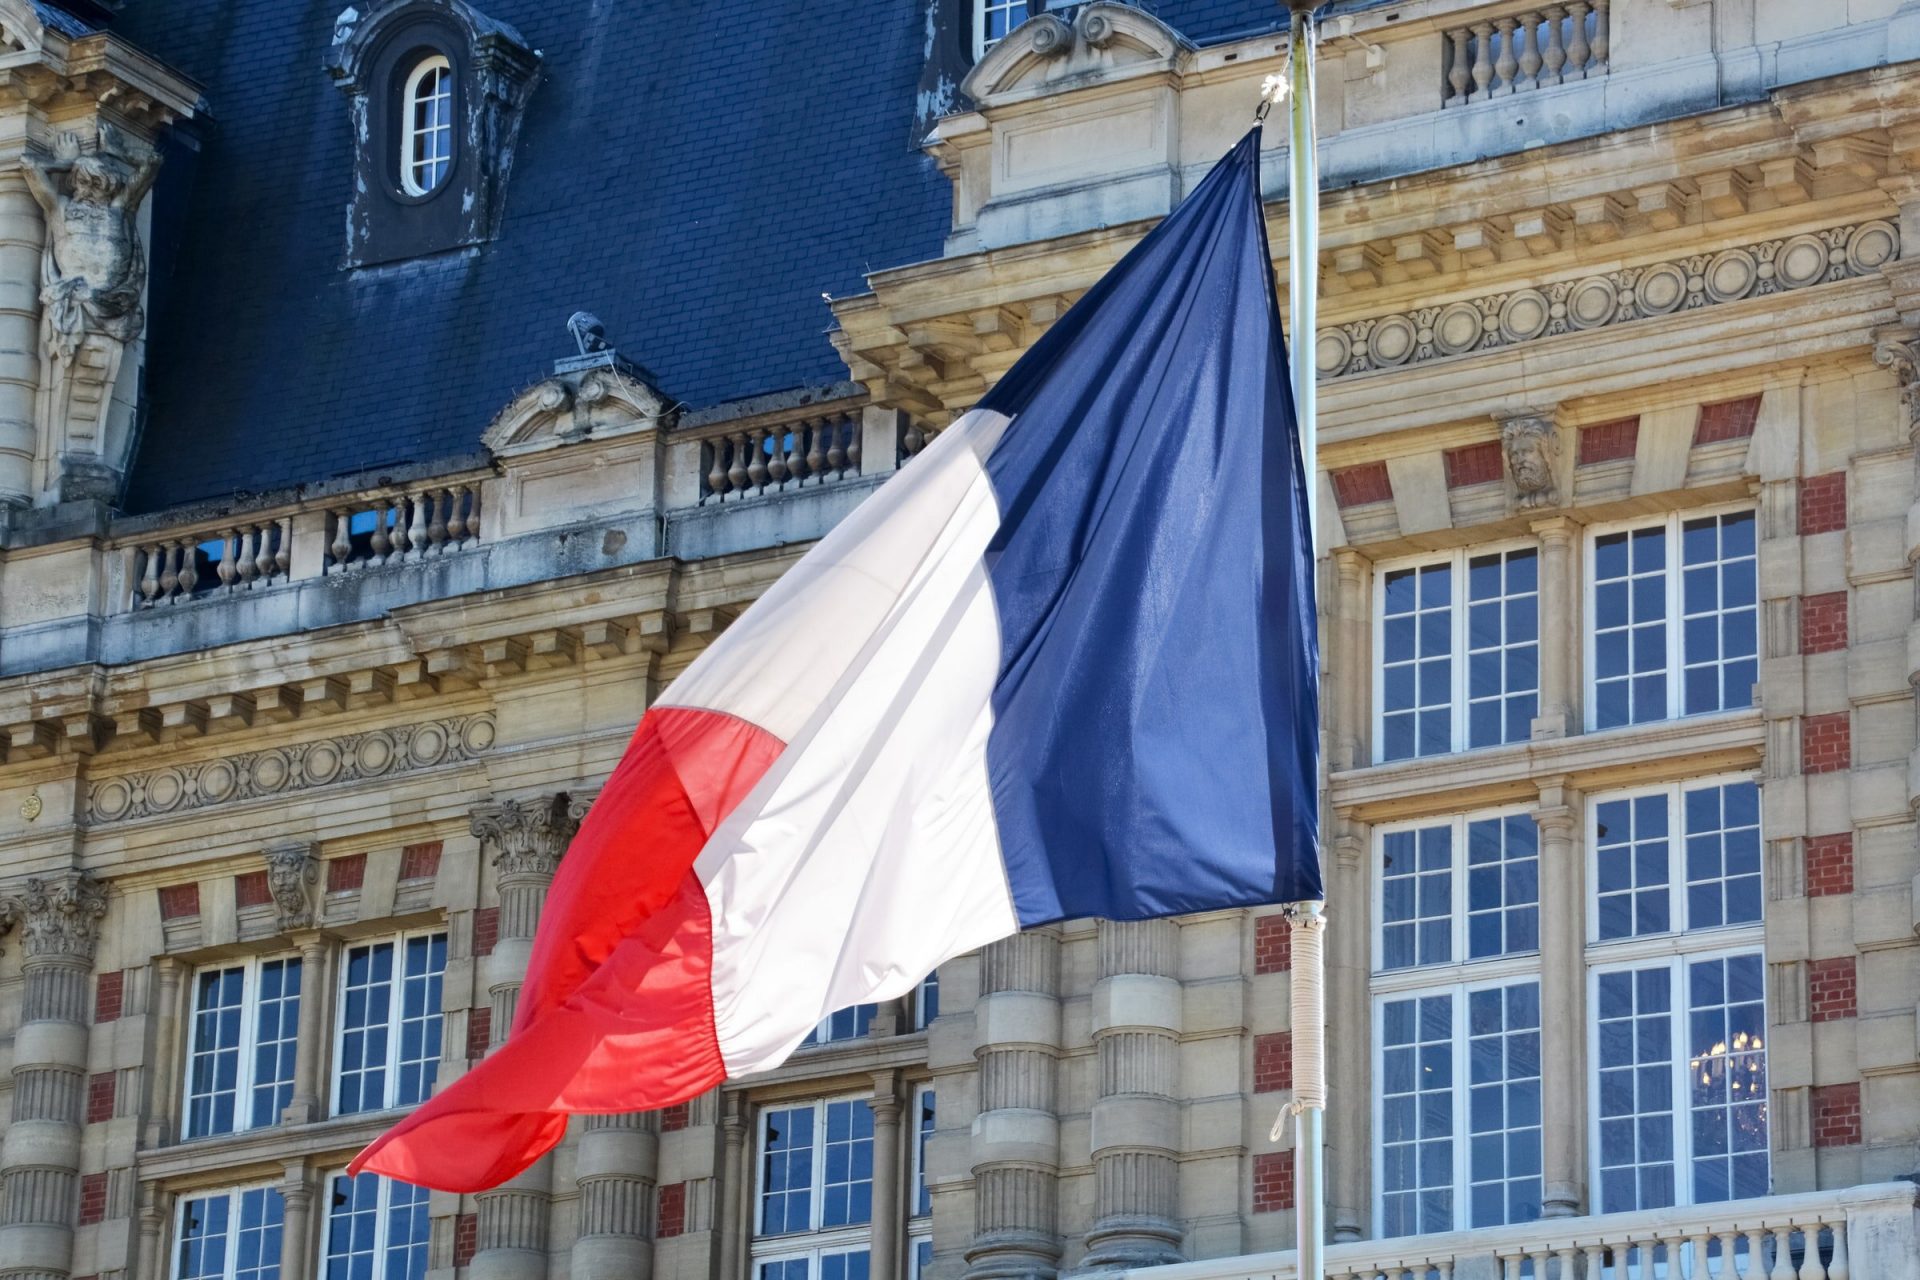 Ֆրանսիա-Ադրբեջան պատգամավորական բարեկամության խումբը դադարեցնում է իր գործունեությունը